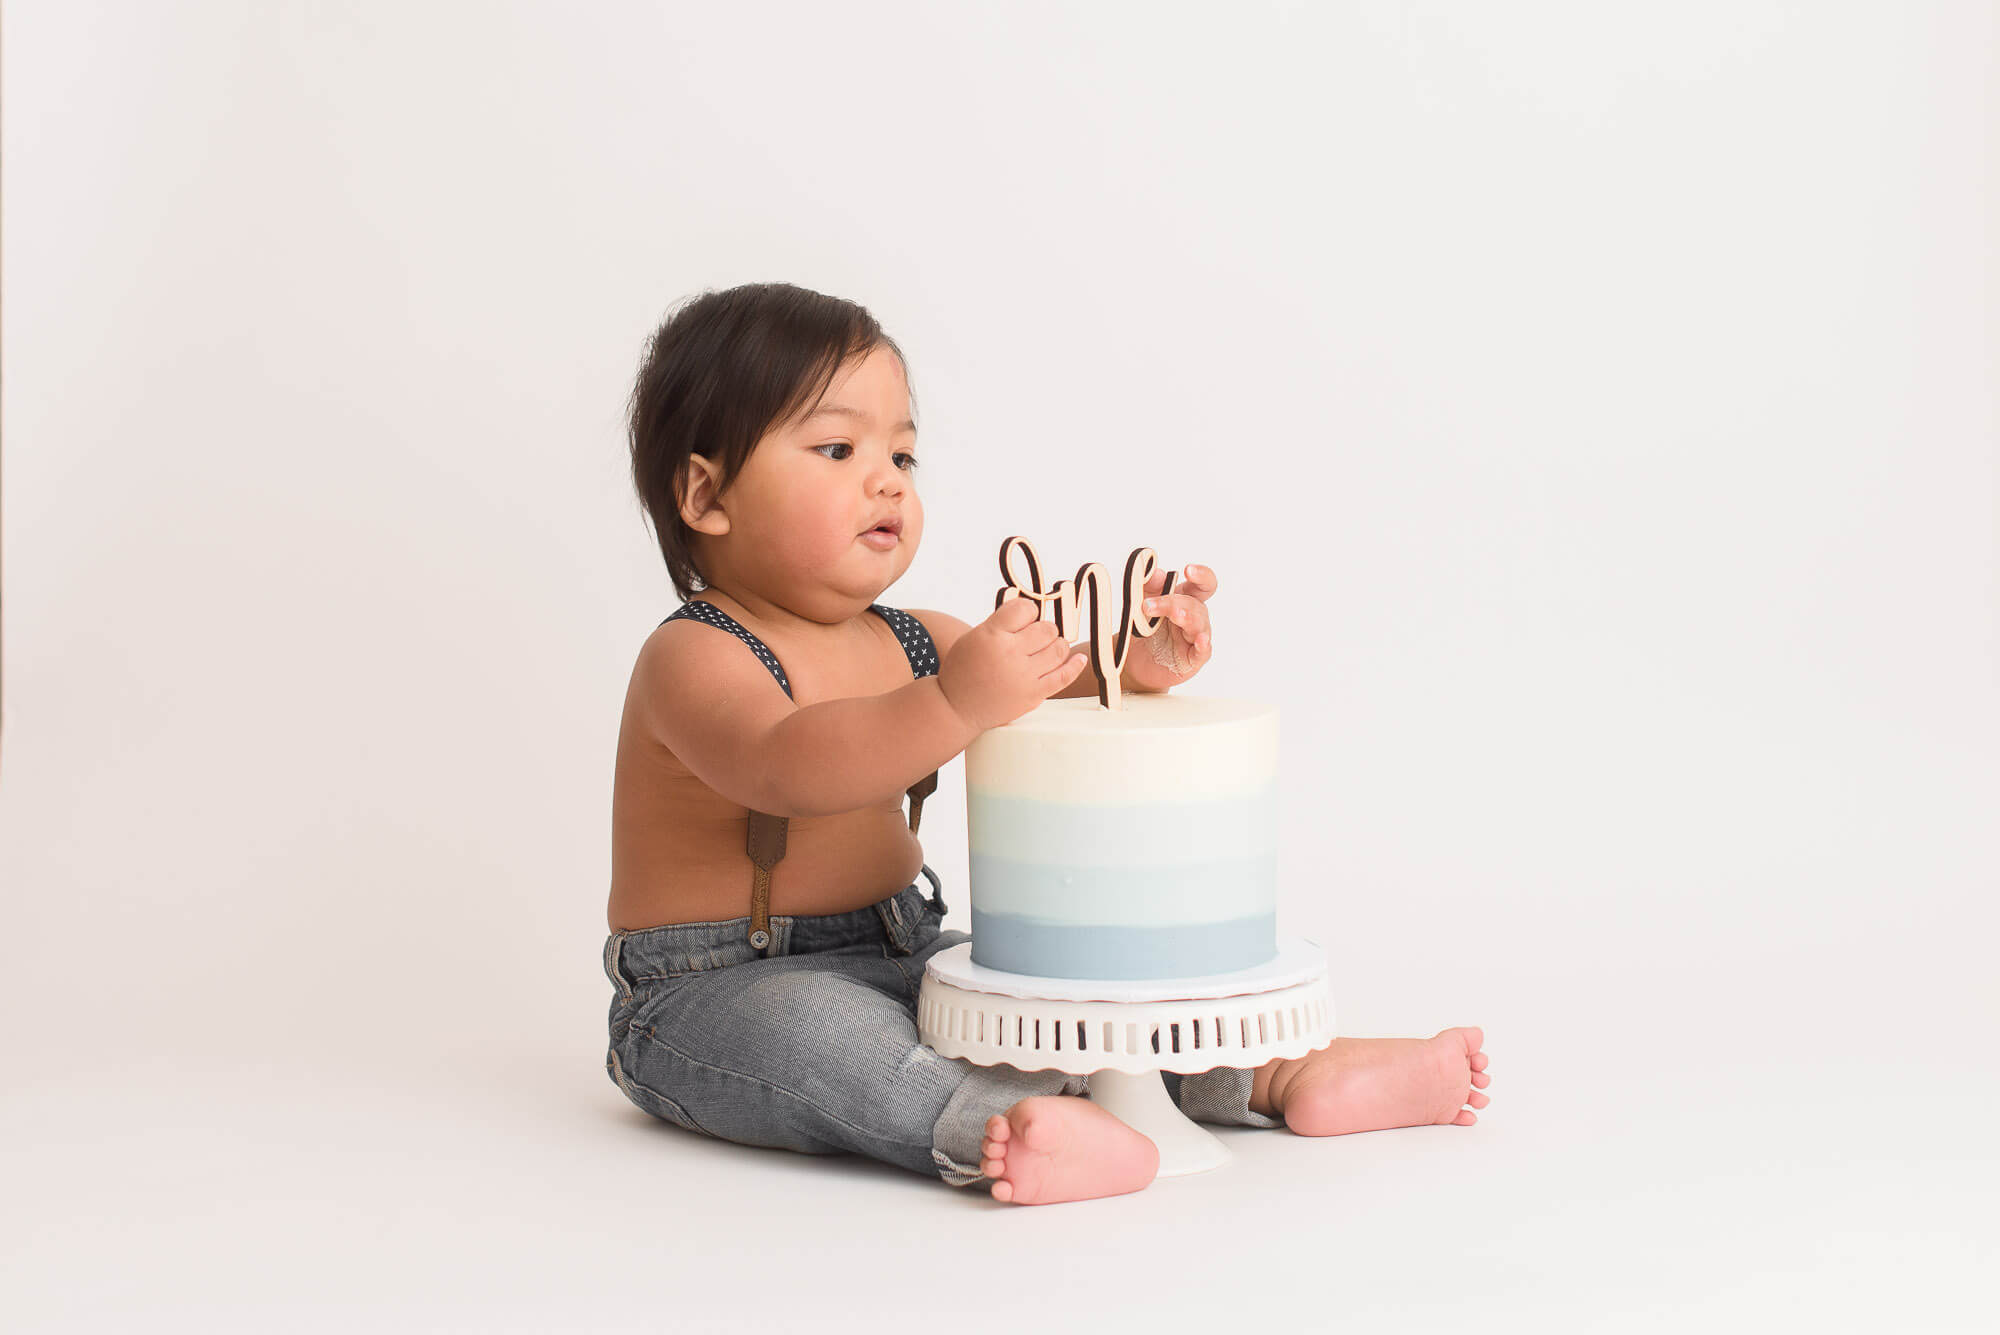 one-year old boy celebrates his cake smash photo session